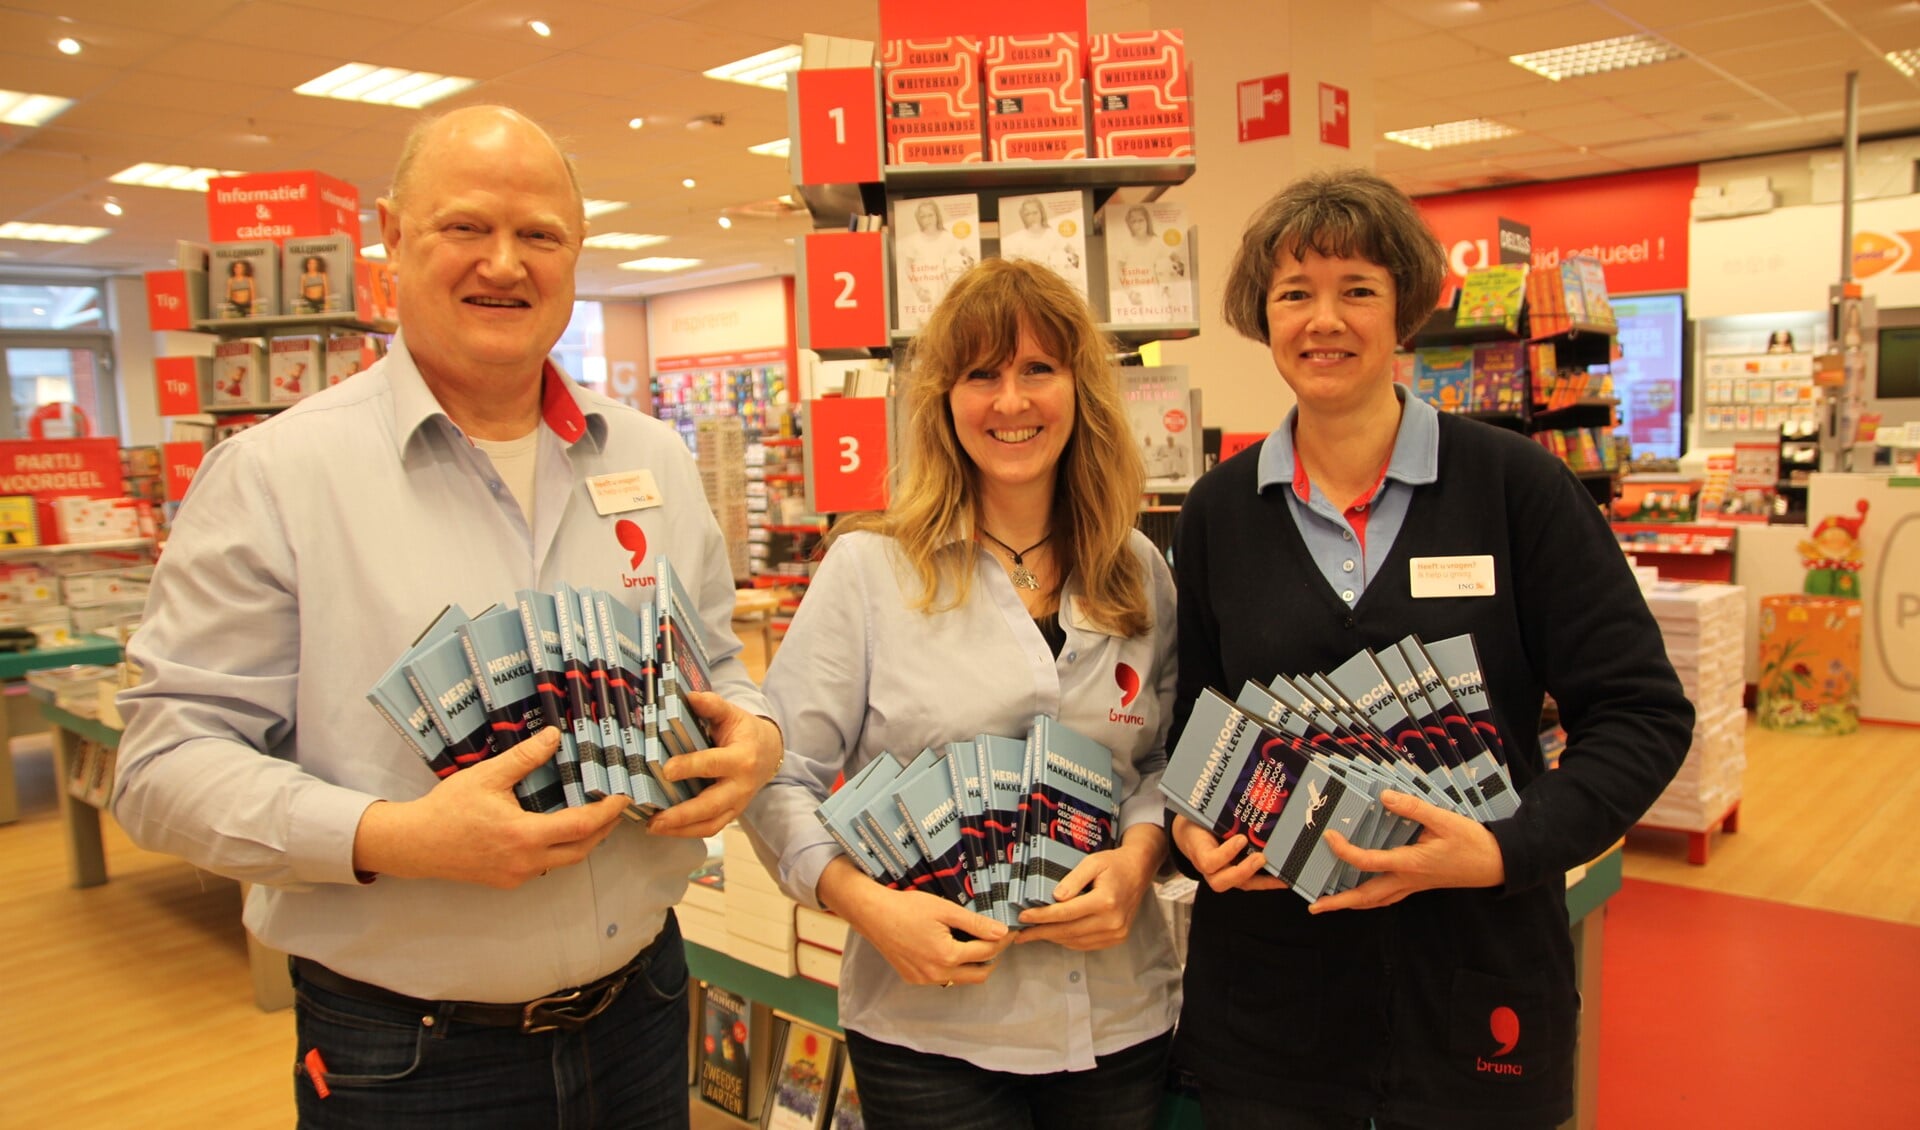 Gosse Beitsma en zijn collega's Rieneke en Sascha met een stapel Boekenweekgeschenkboekjes.